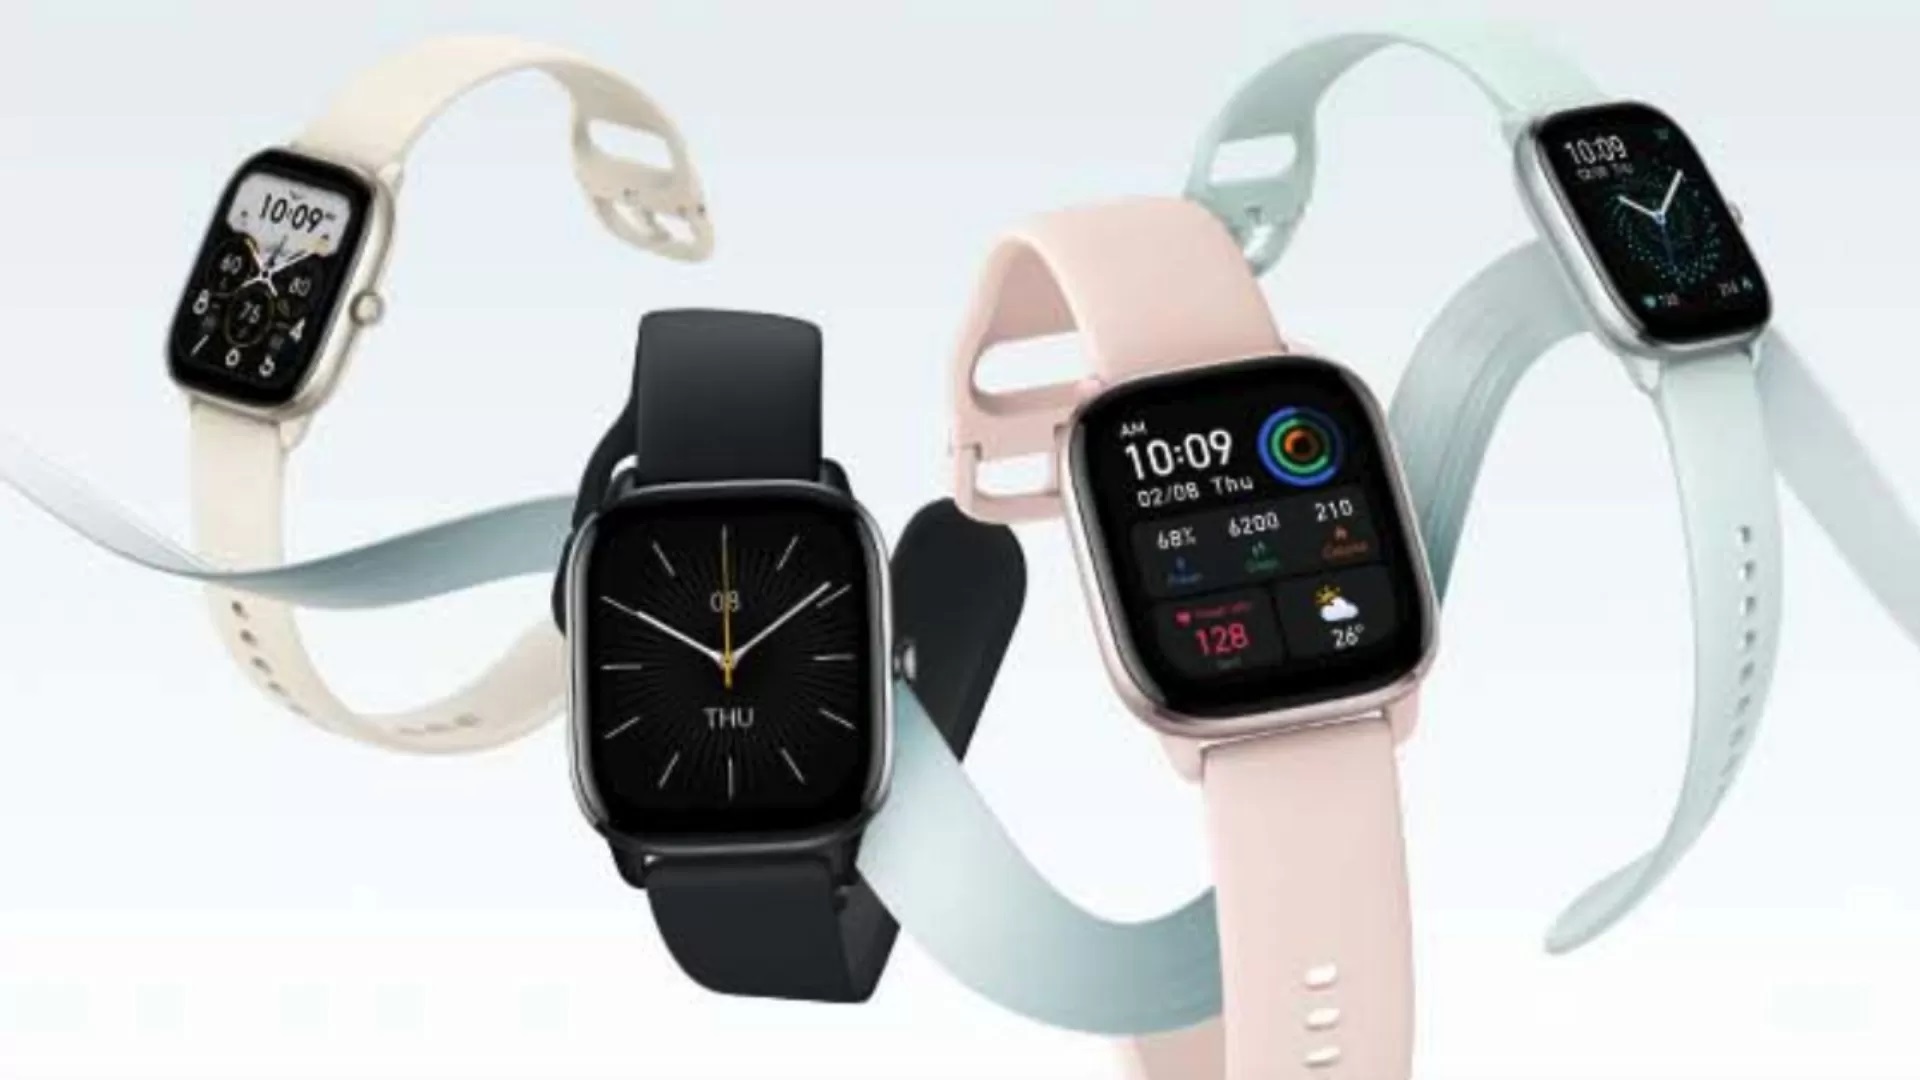 Amazfit lance la smartwatch GTS 4 Mini avec moniteur de fréquence cardiaque, GPS et résistance à l'eau